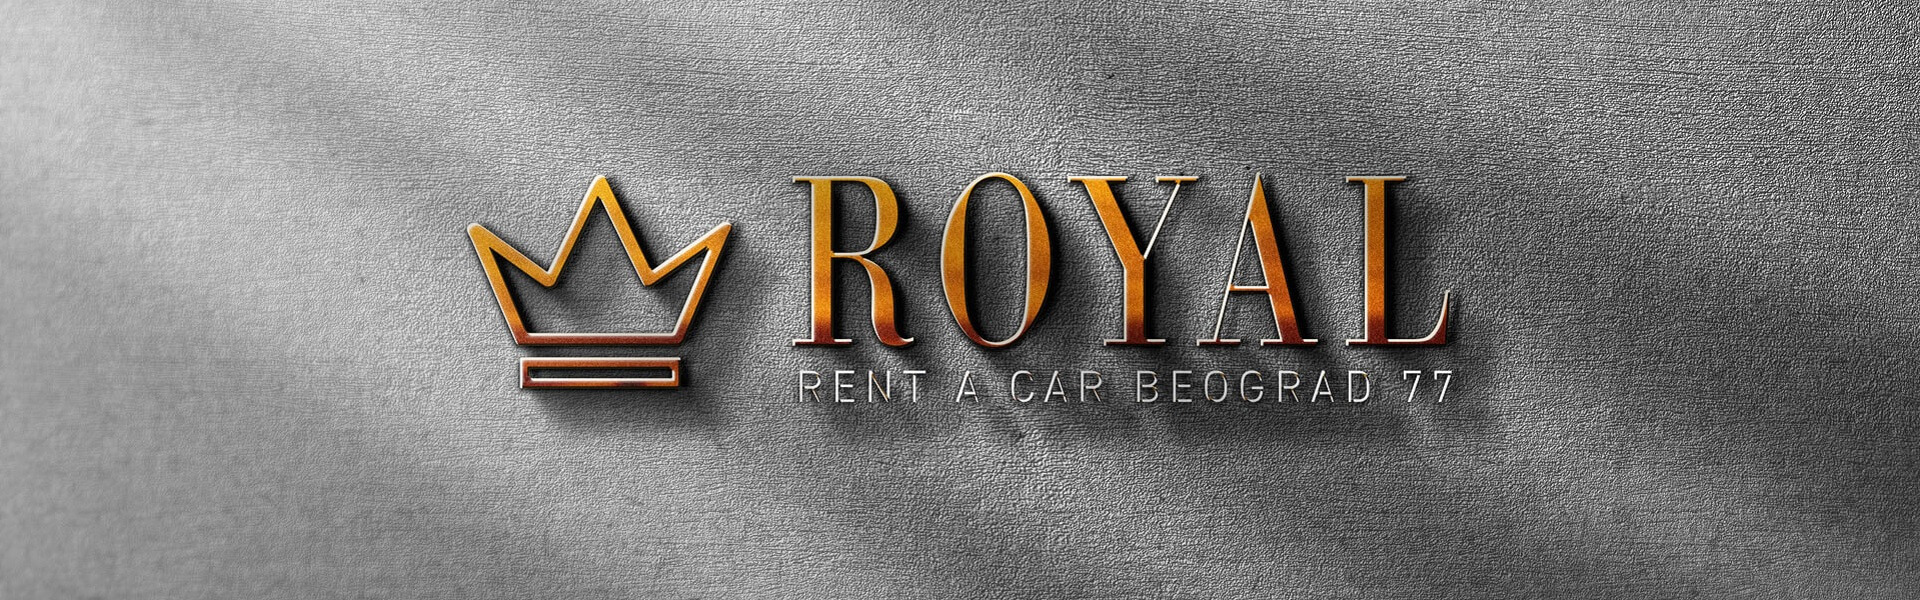 Iznajmljivanje auto dizalica | Car rental Beograd Royal